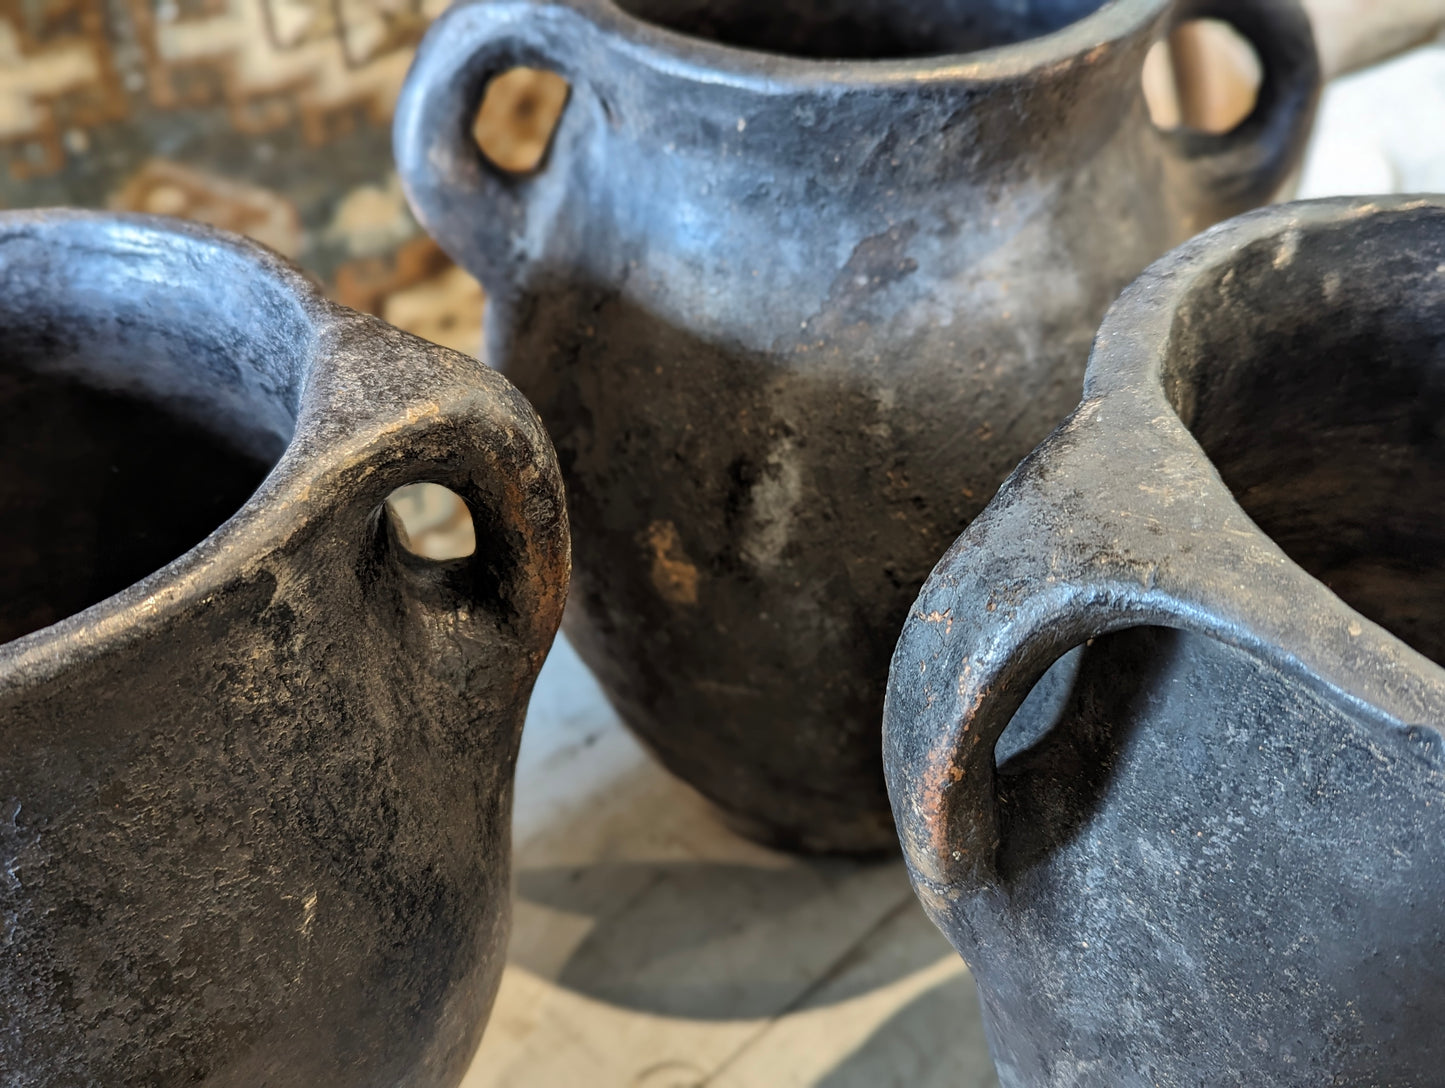 Set of three blacken ceramic pots